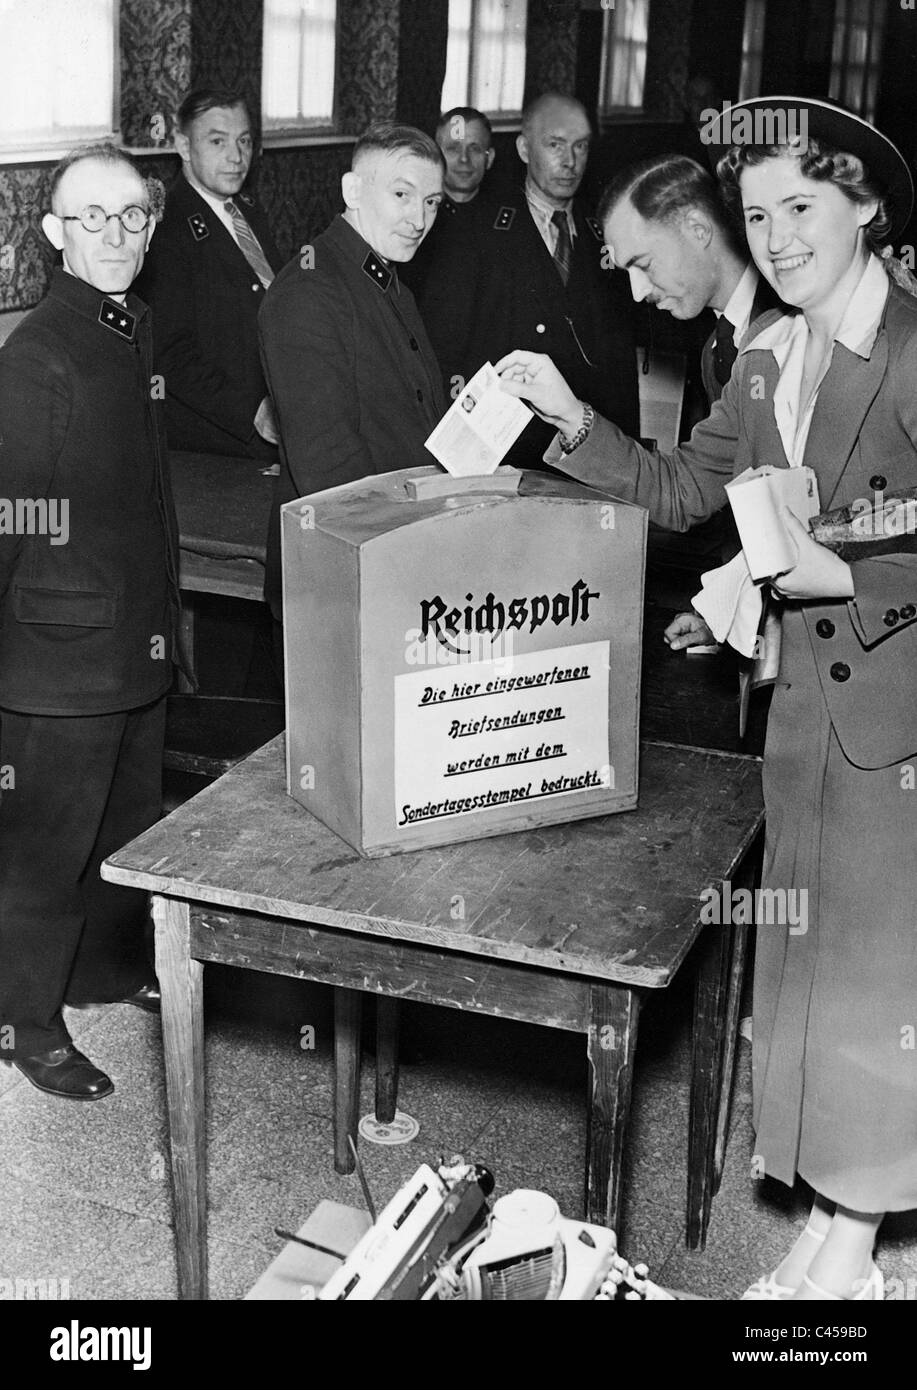 Data speciale timbro azione della Reichspost, 1937 Foto Stock